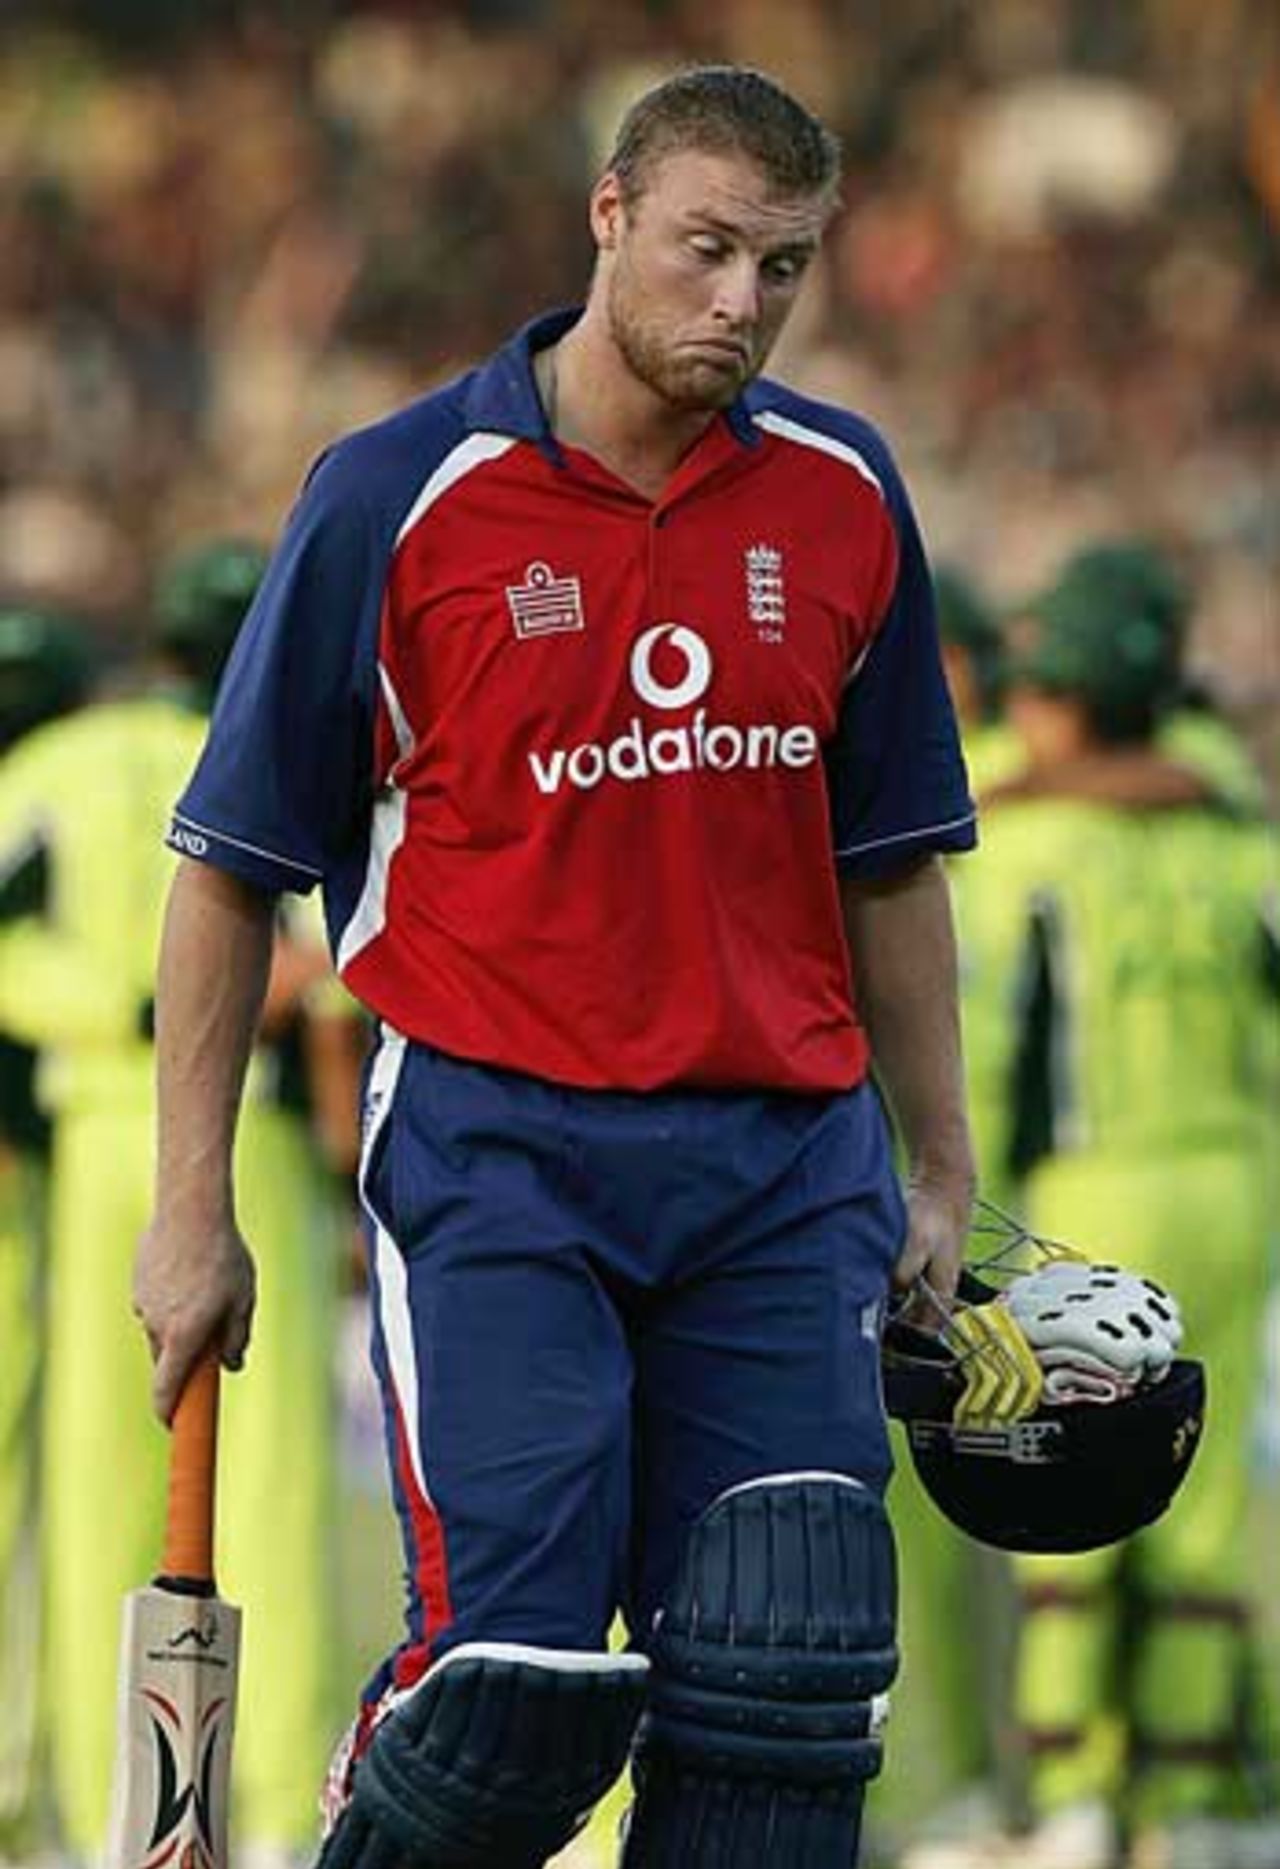 Andrew Flintoff ponders England's plight after being bowled for 36, Pakistan v England, 3rd ODI, Karachi, December 15, 2005